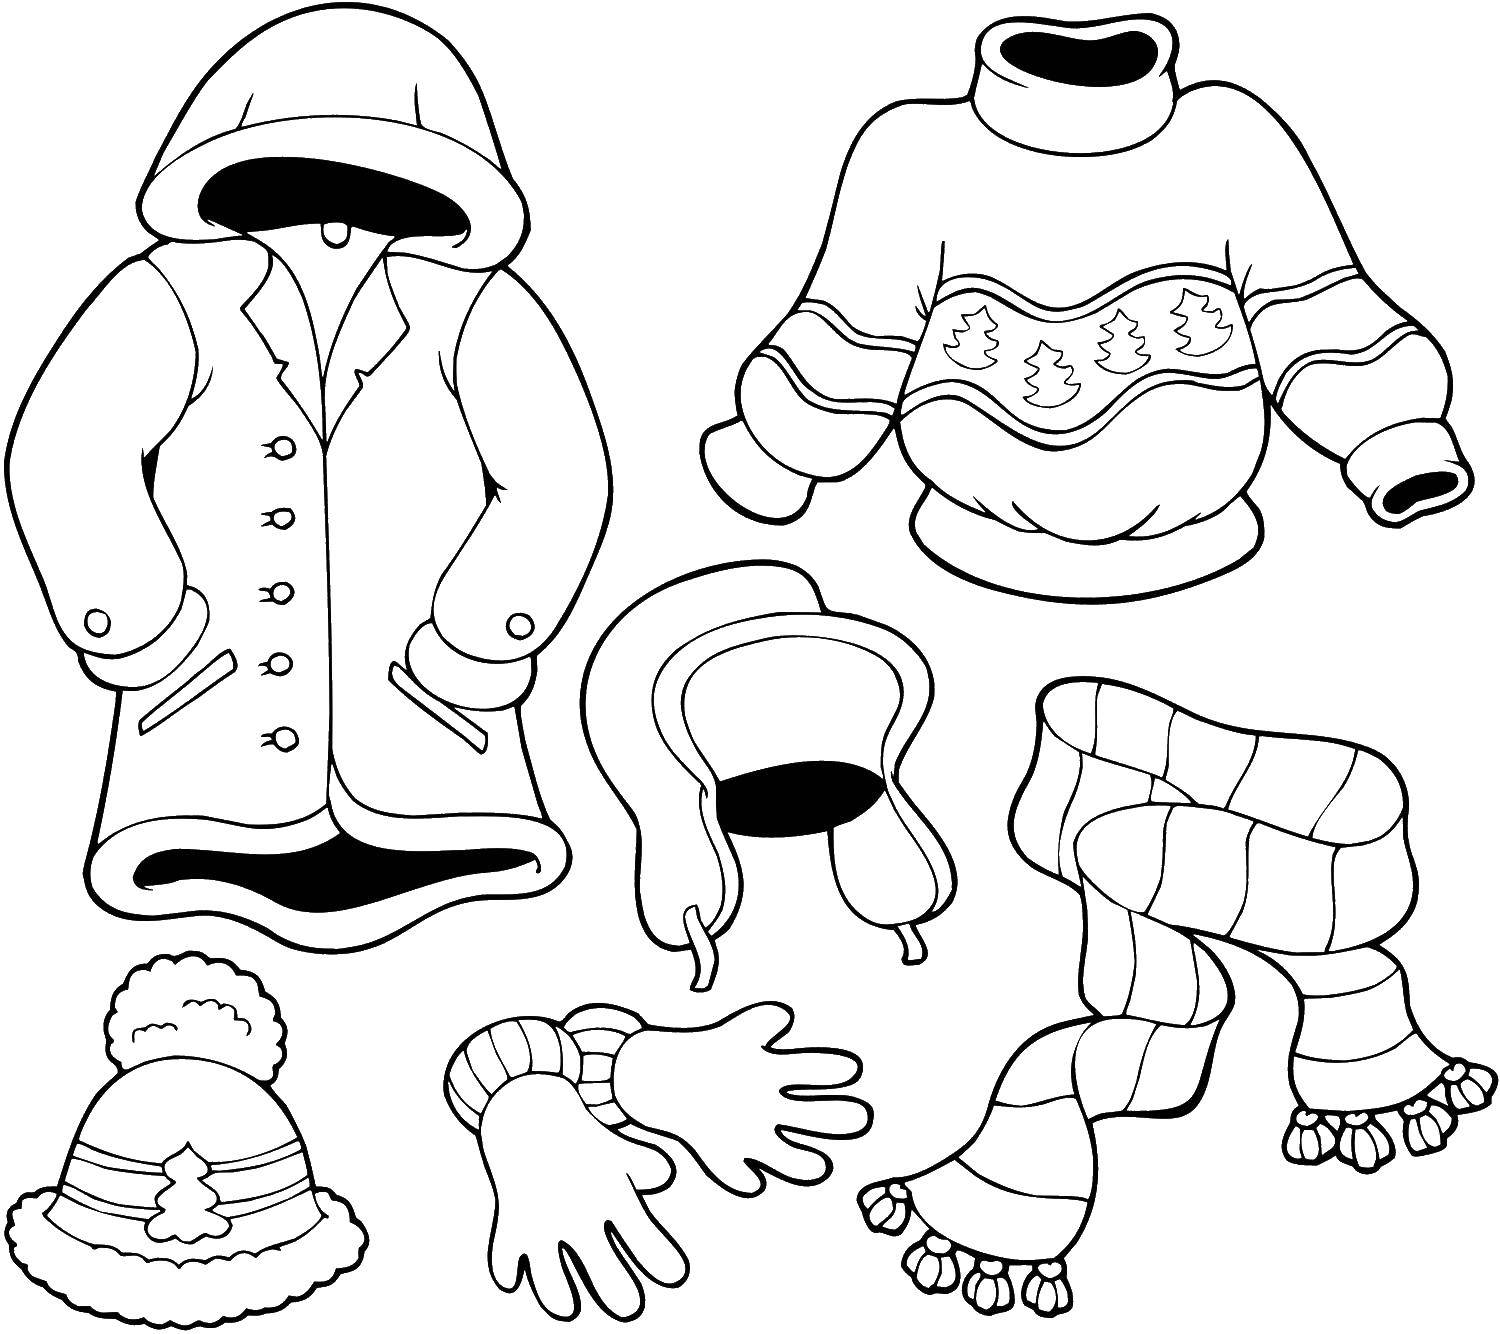 Название: Раскраска Набор одежды для зимы. Категория: одежда. Теги: Одежда, ушанка, шапка, шарф, перчатки, свитер, пальто.